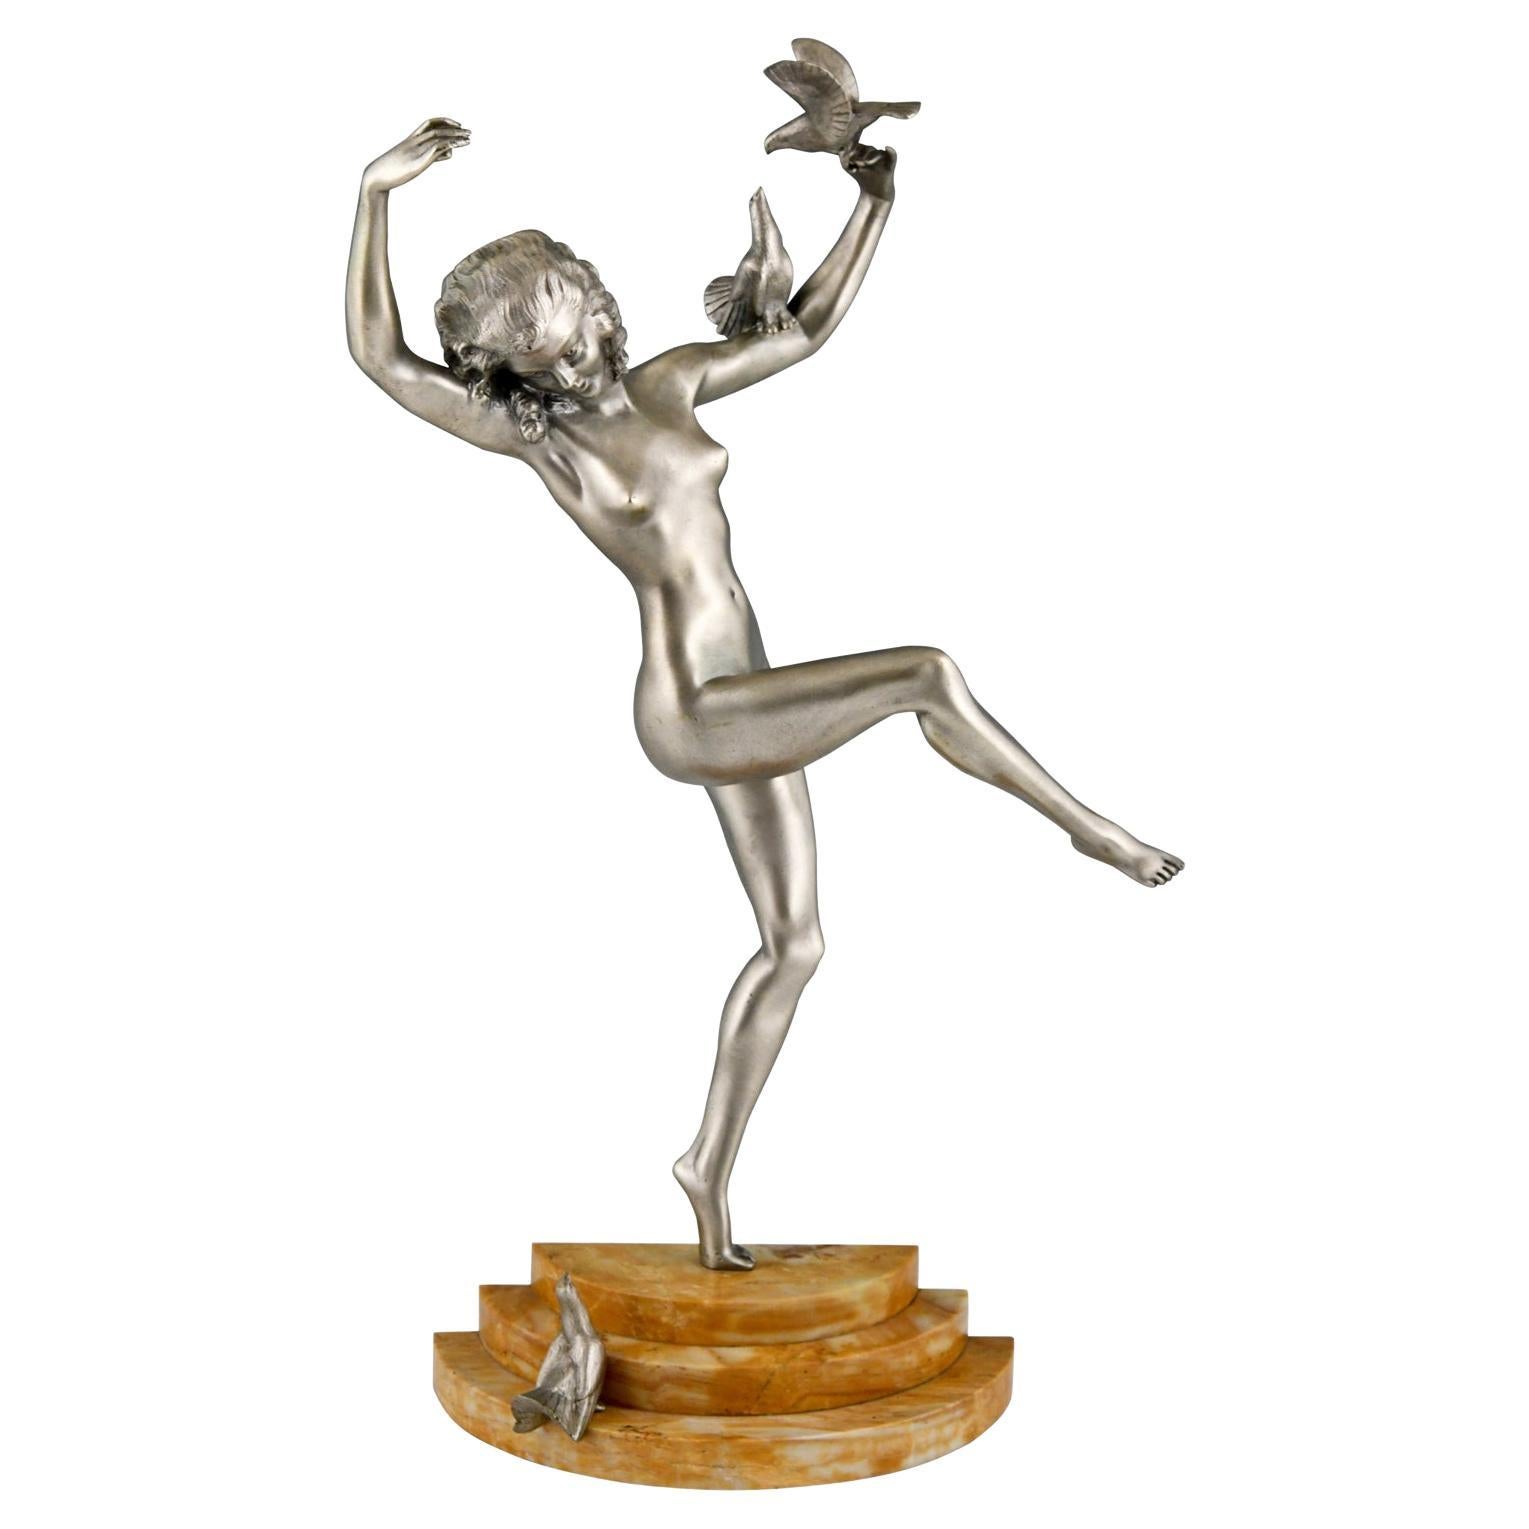 Art Deco Bronze Sculpture of Dancing Nude with Birds by Marcel Bouraine 1930